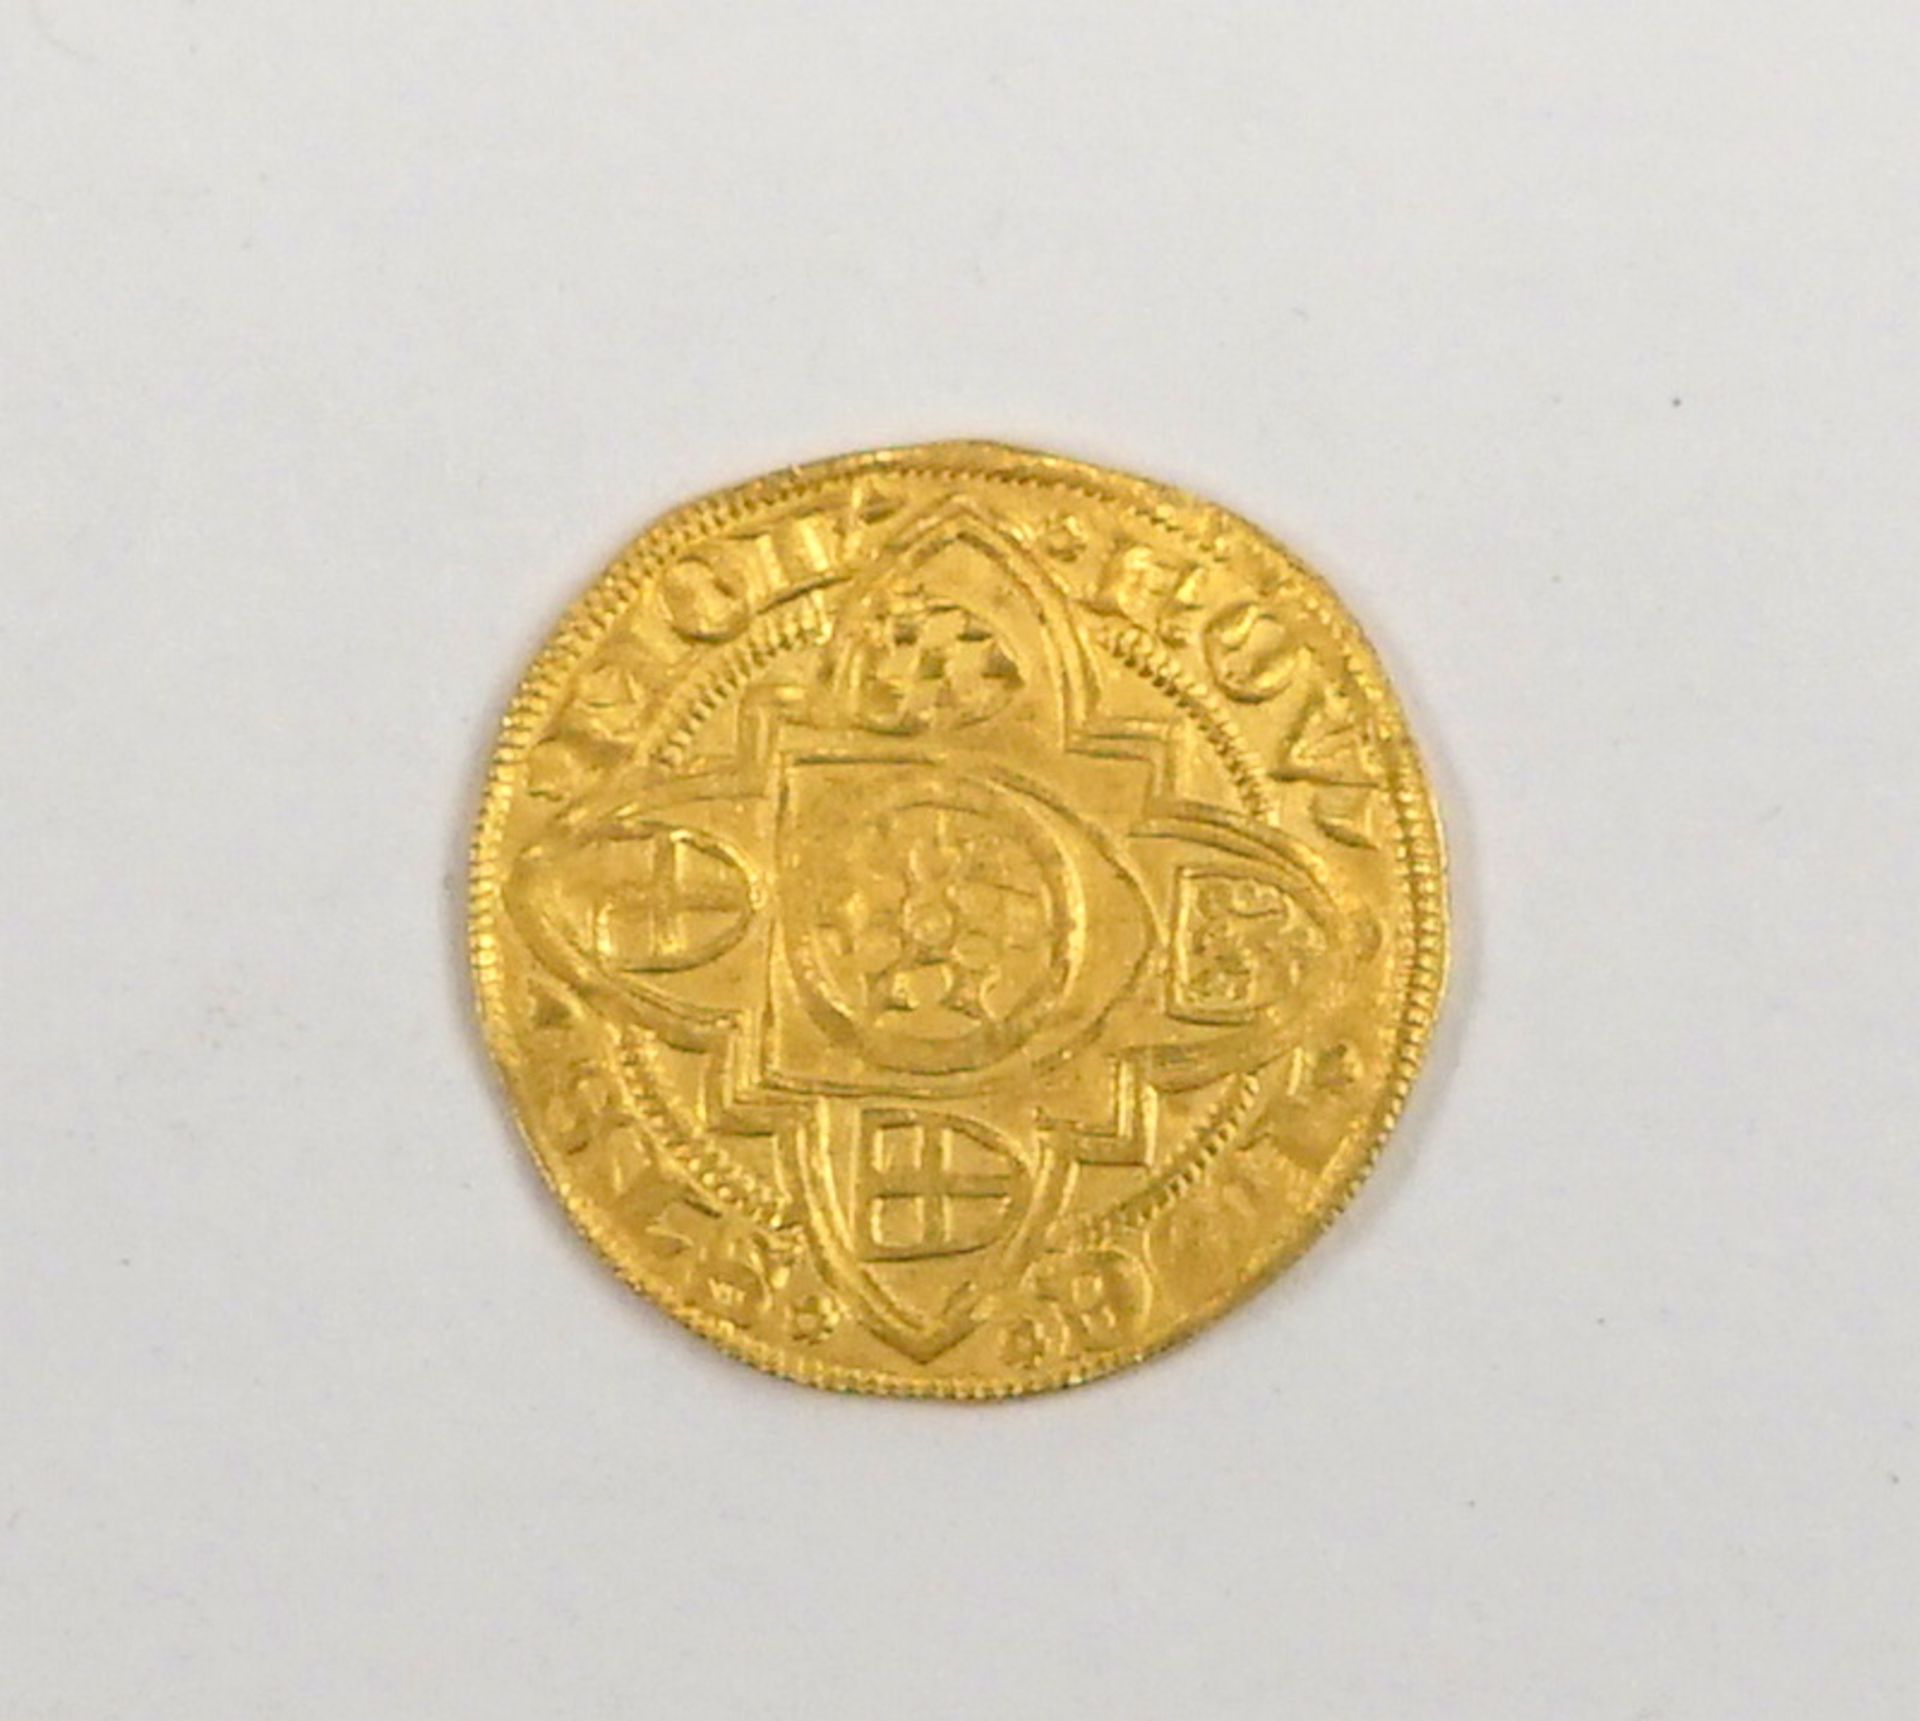 Goldmünze,MAINZ, BISTUM86Konrad III. von Dhaun, 1419-1434 Goldgulden o.J. (1420), Bingen, 3,51g,